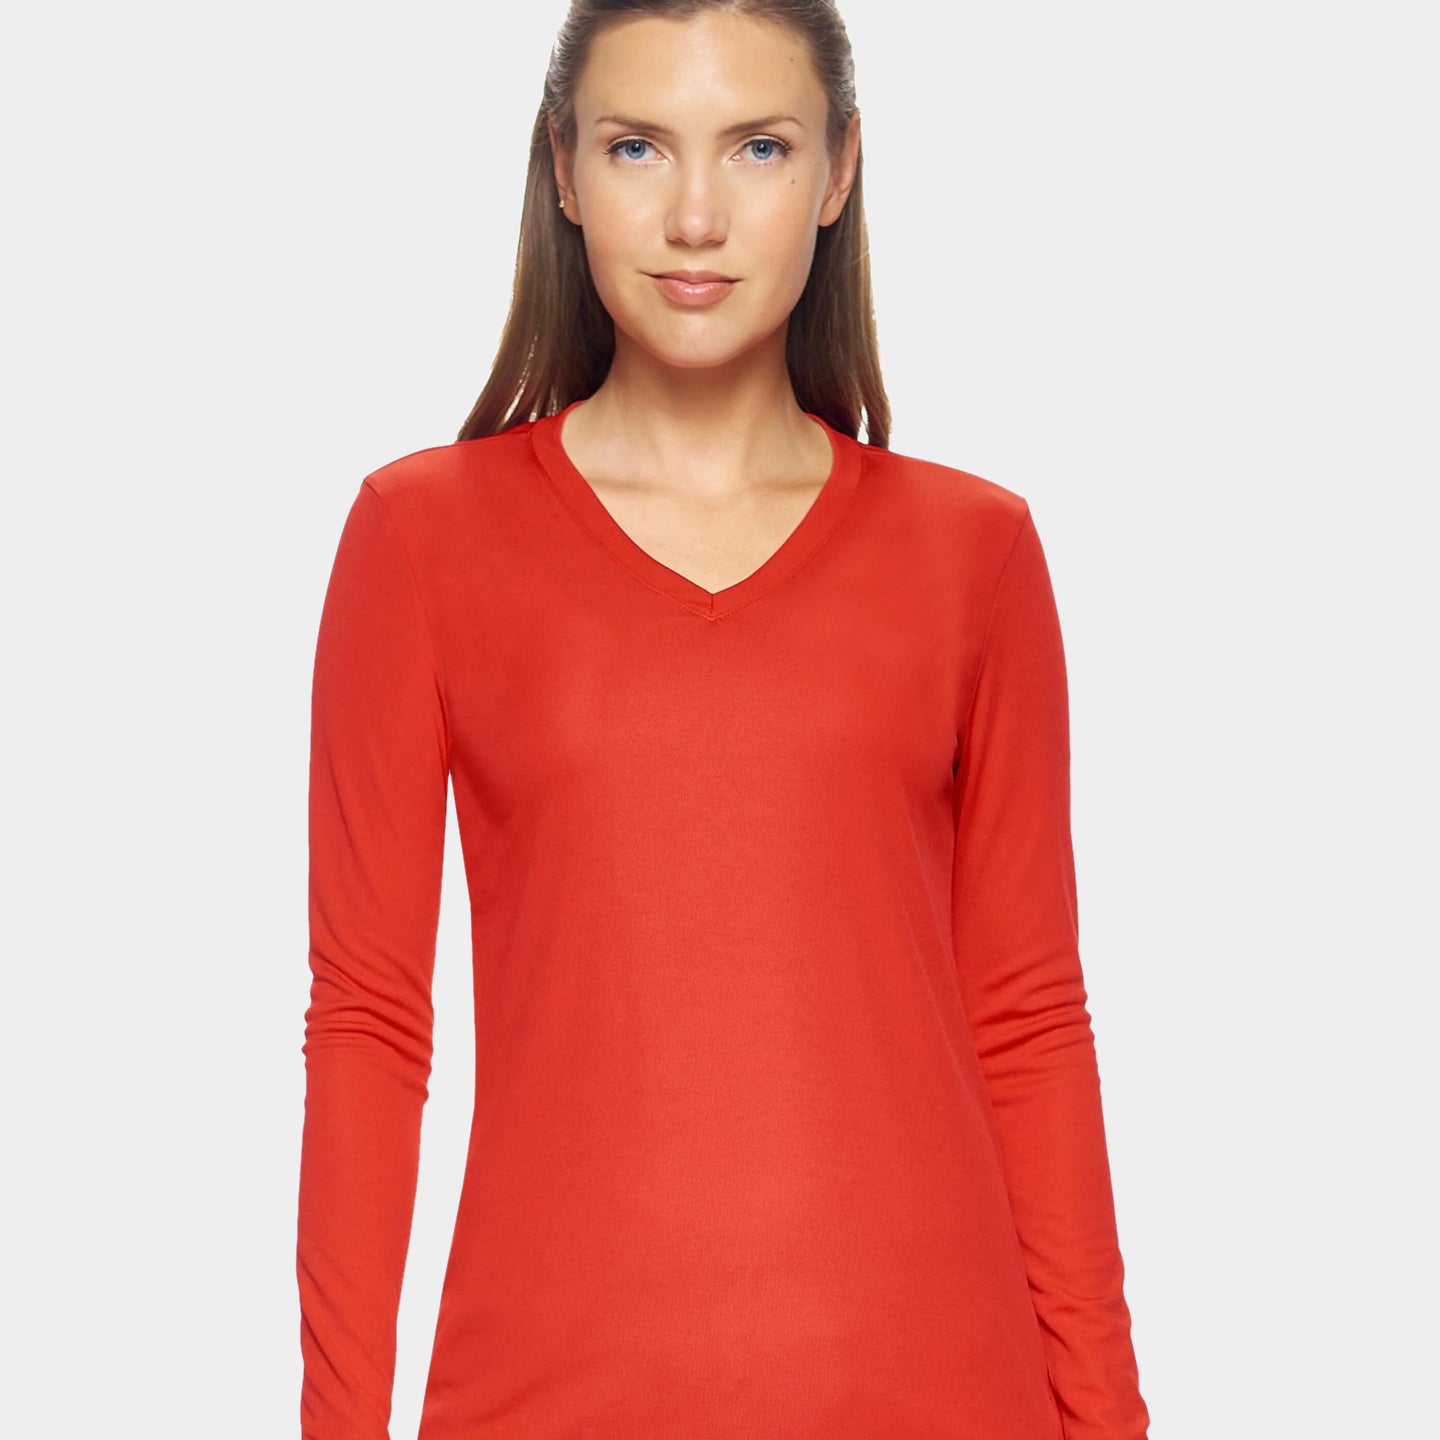 Expert Brand DriMax Women's Performance V-Neck Long Sleeve Shirt, XL, Red A1